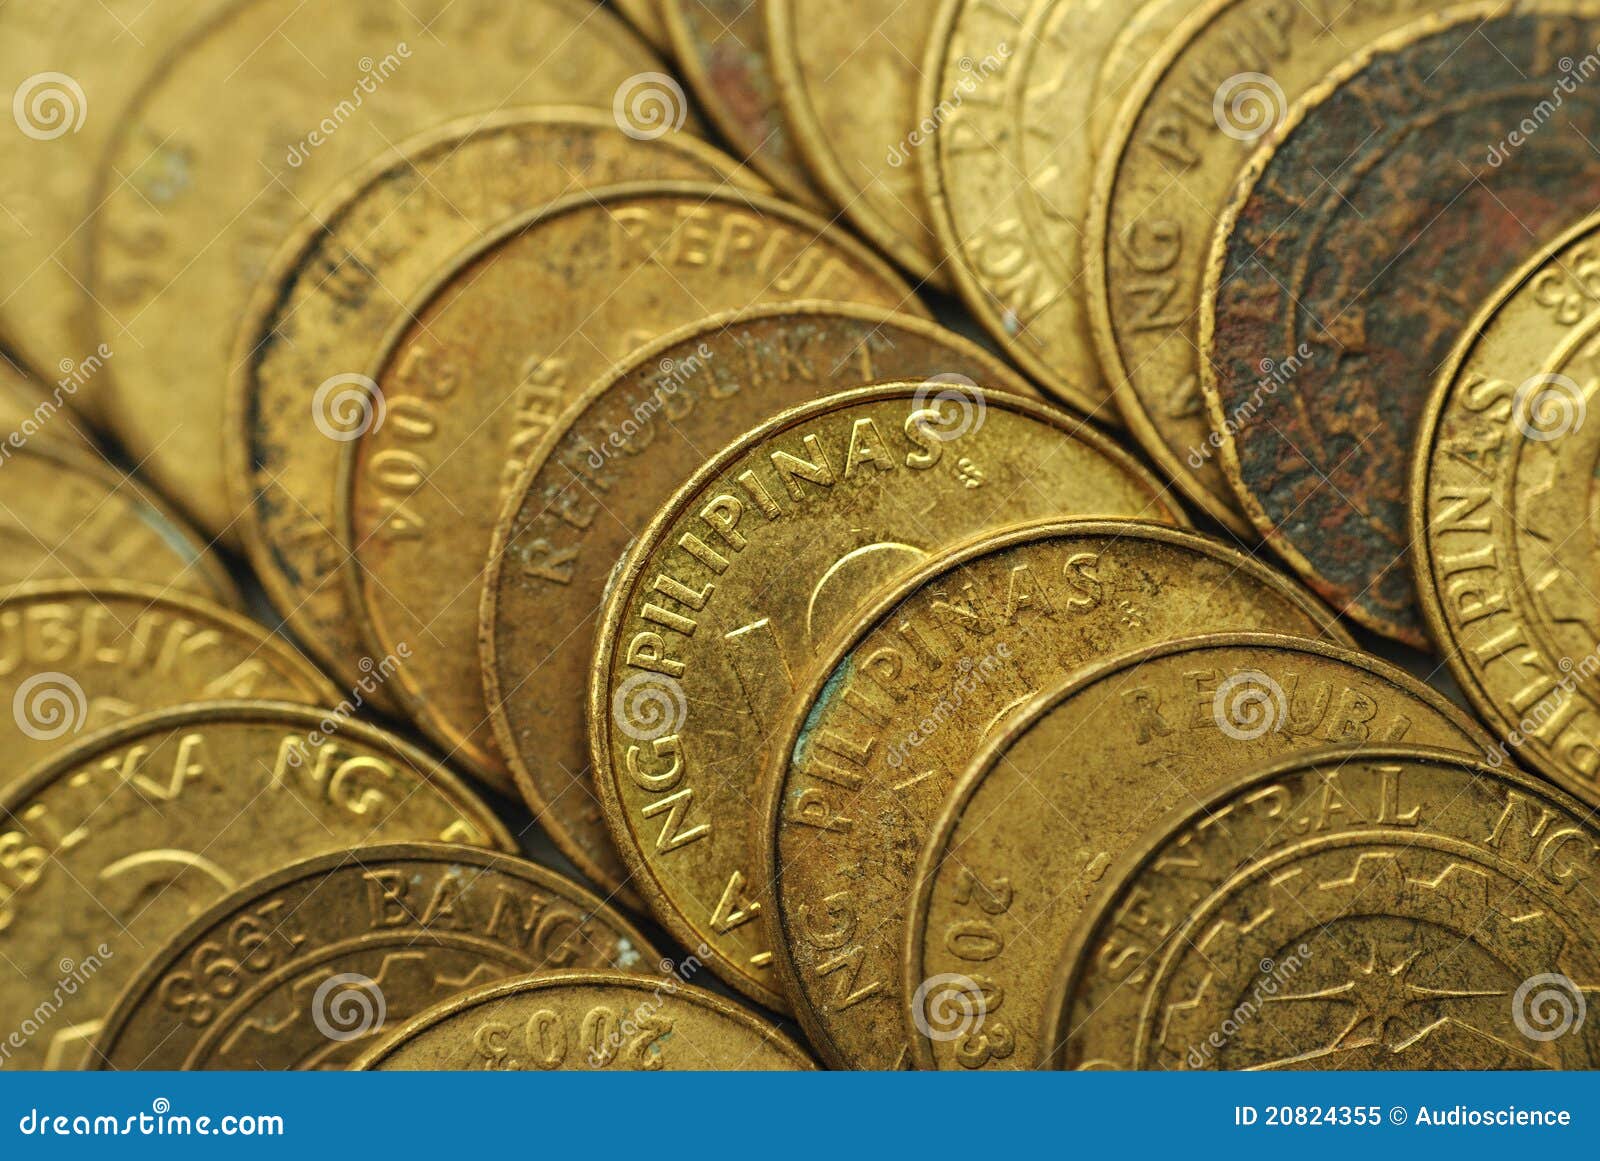 25 centavo philippine coins